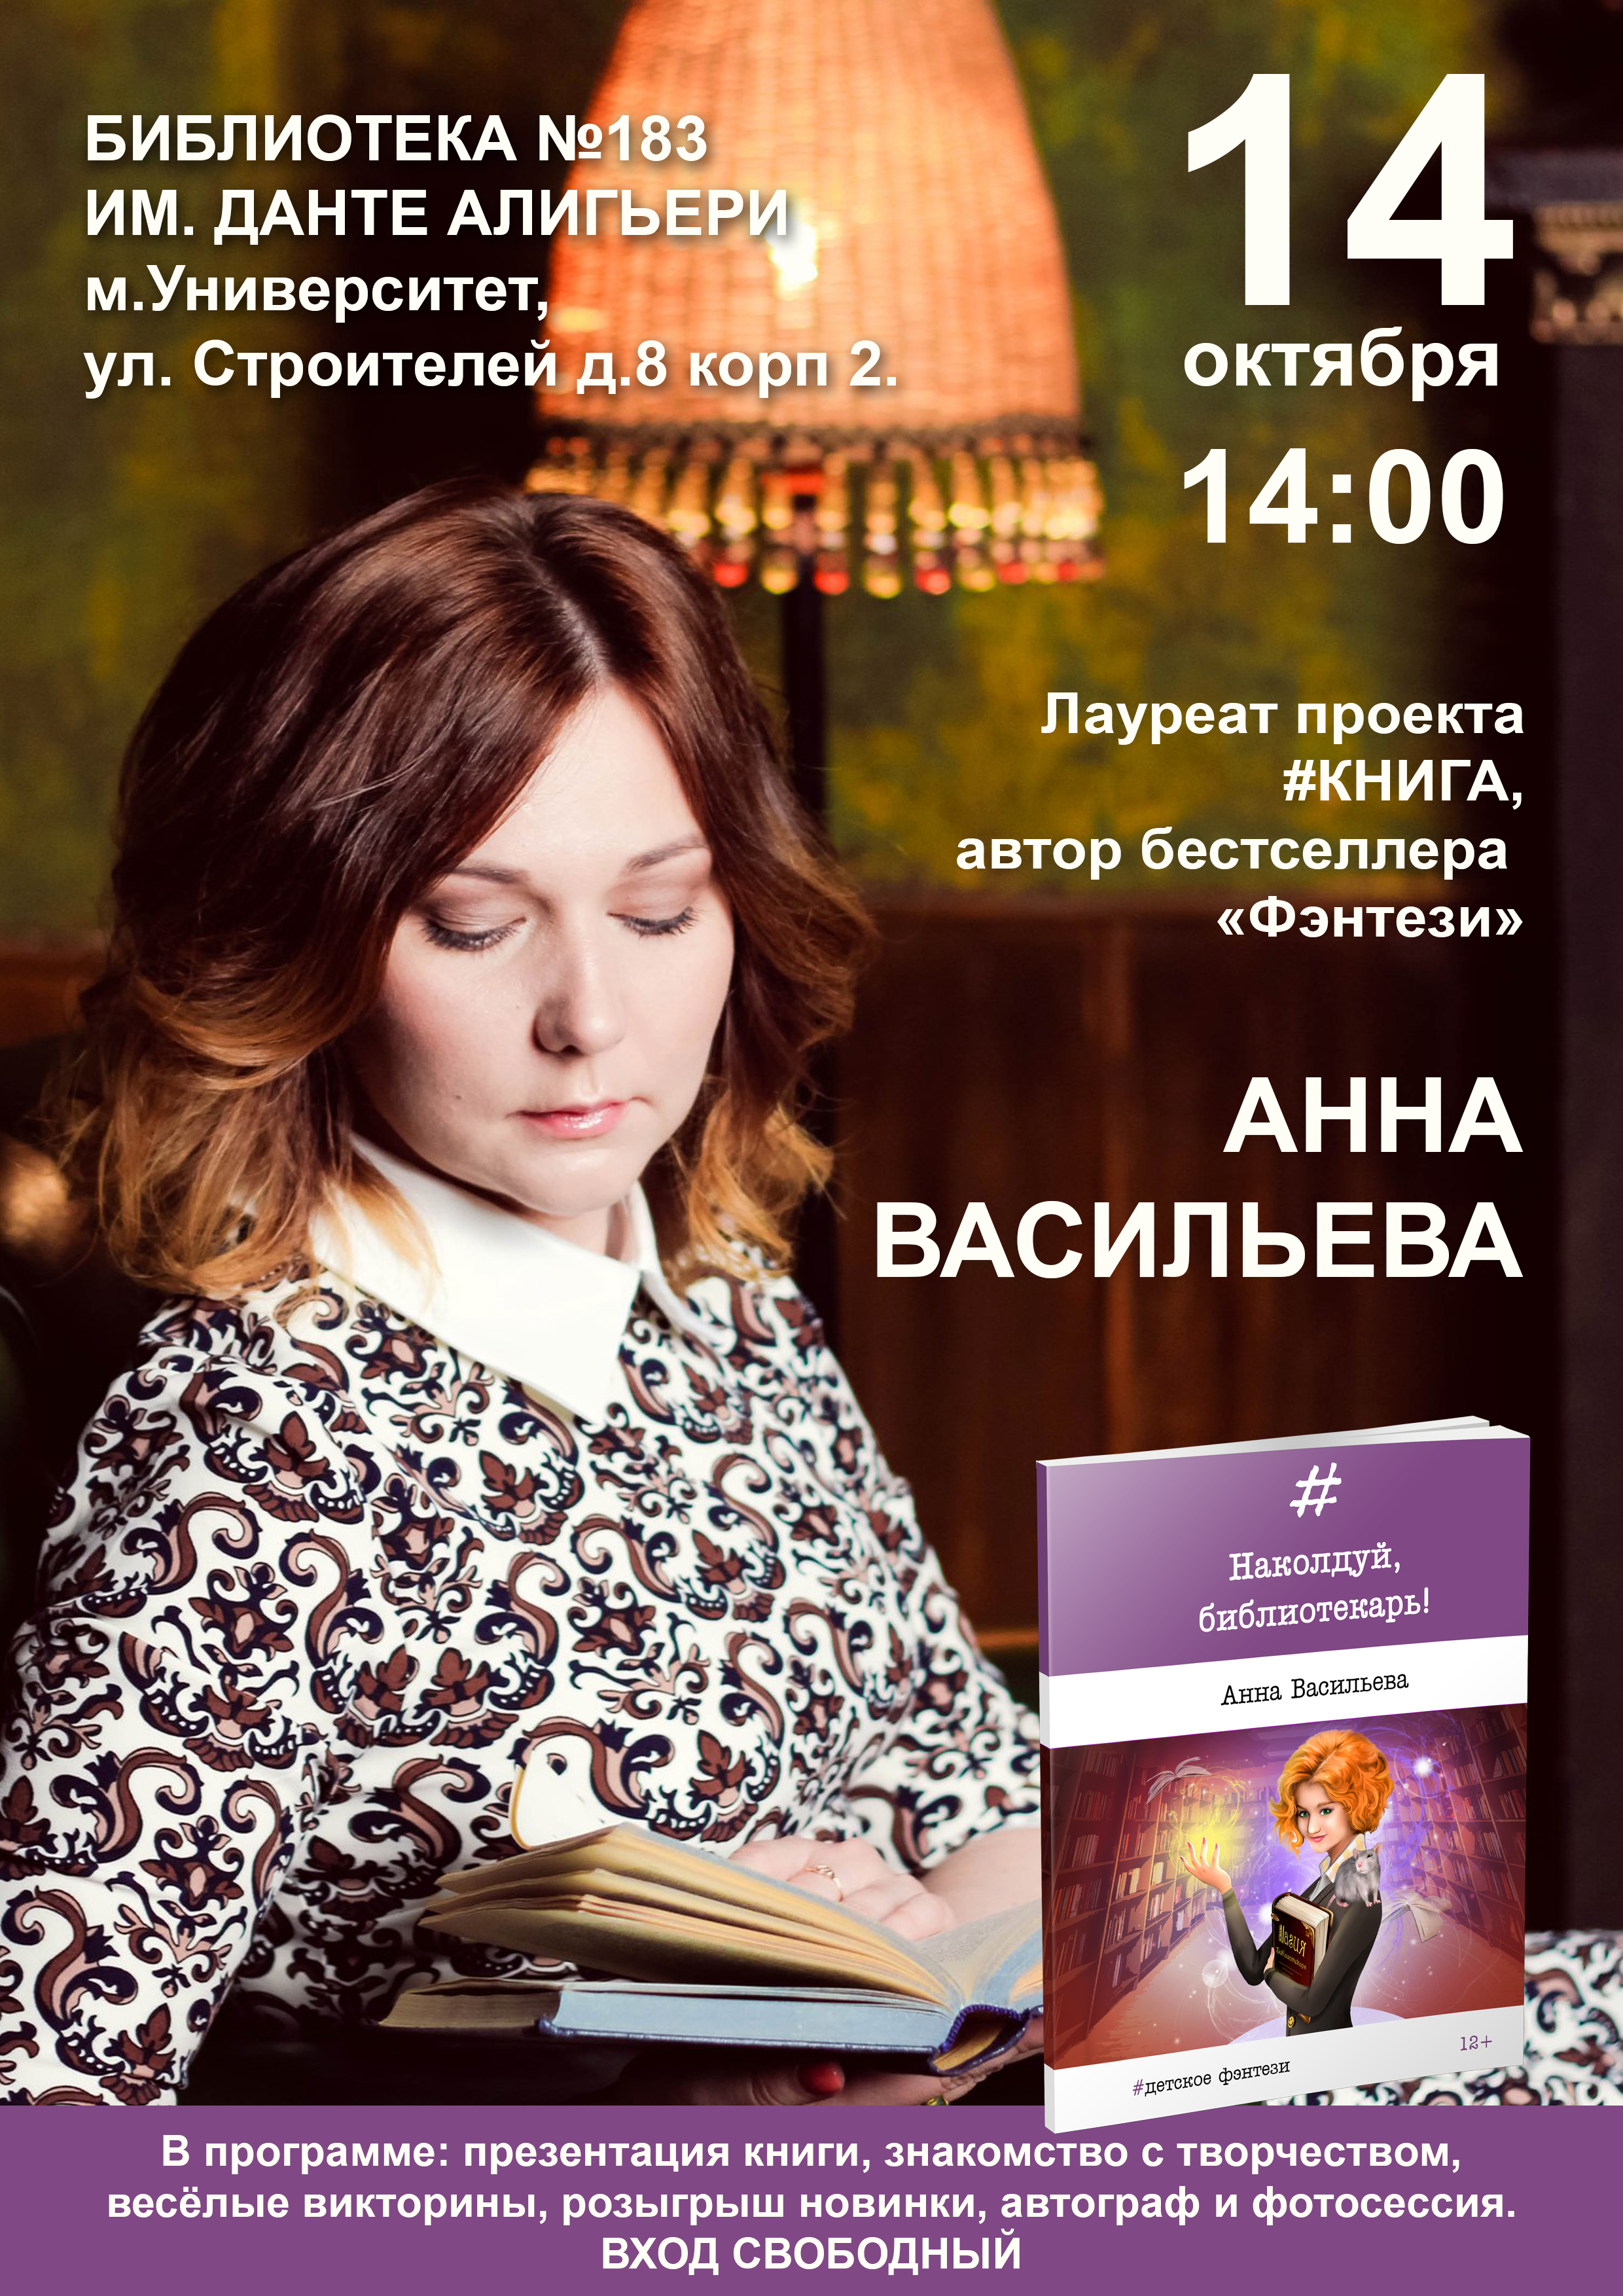 Презентация книги Анны Васильевой "Наколдуй, библиотекарь!" пройдет в Москве